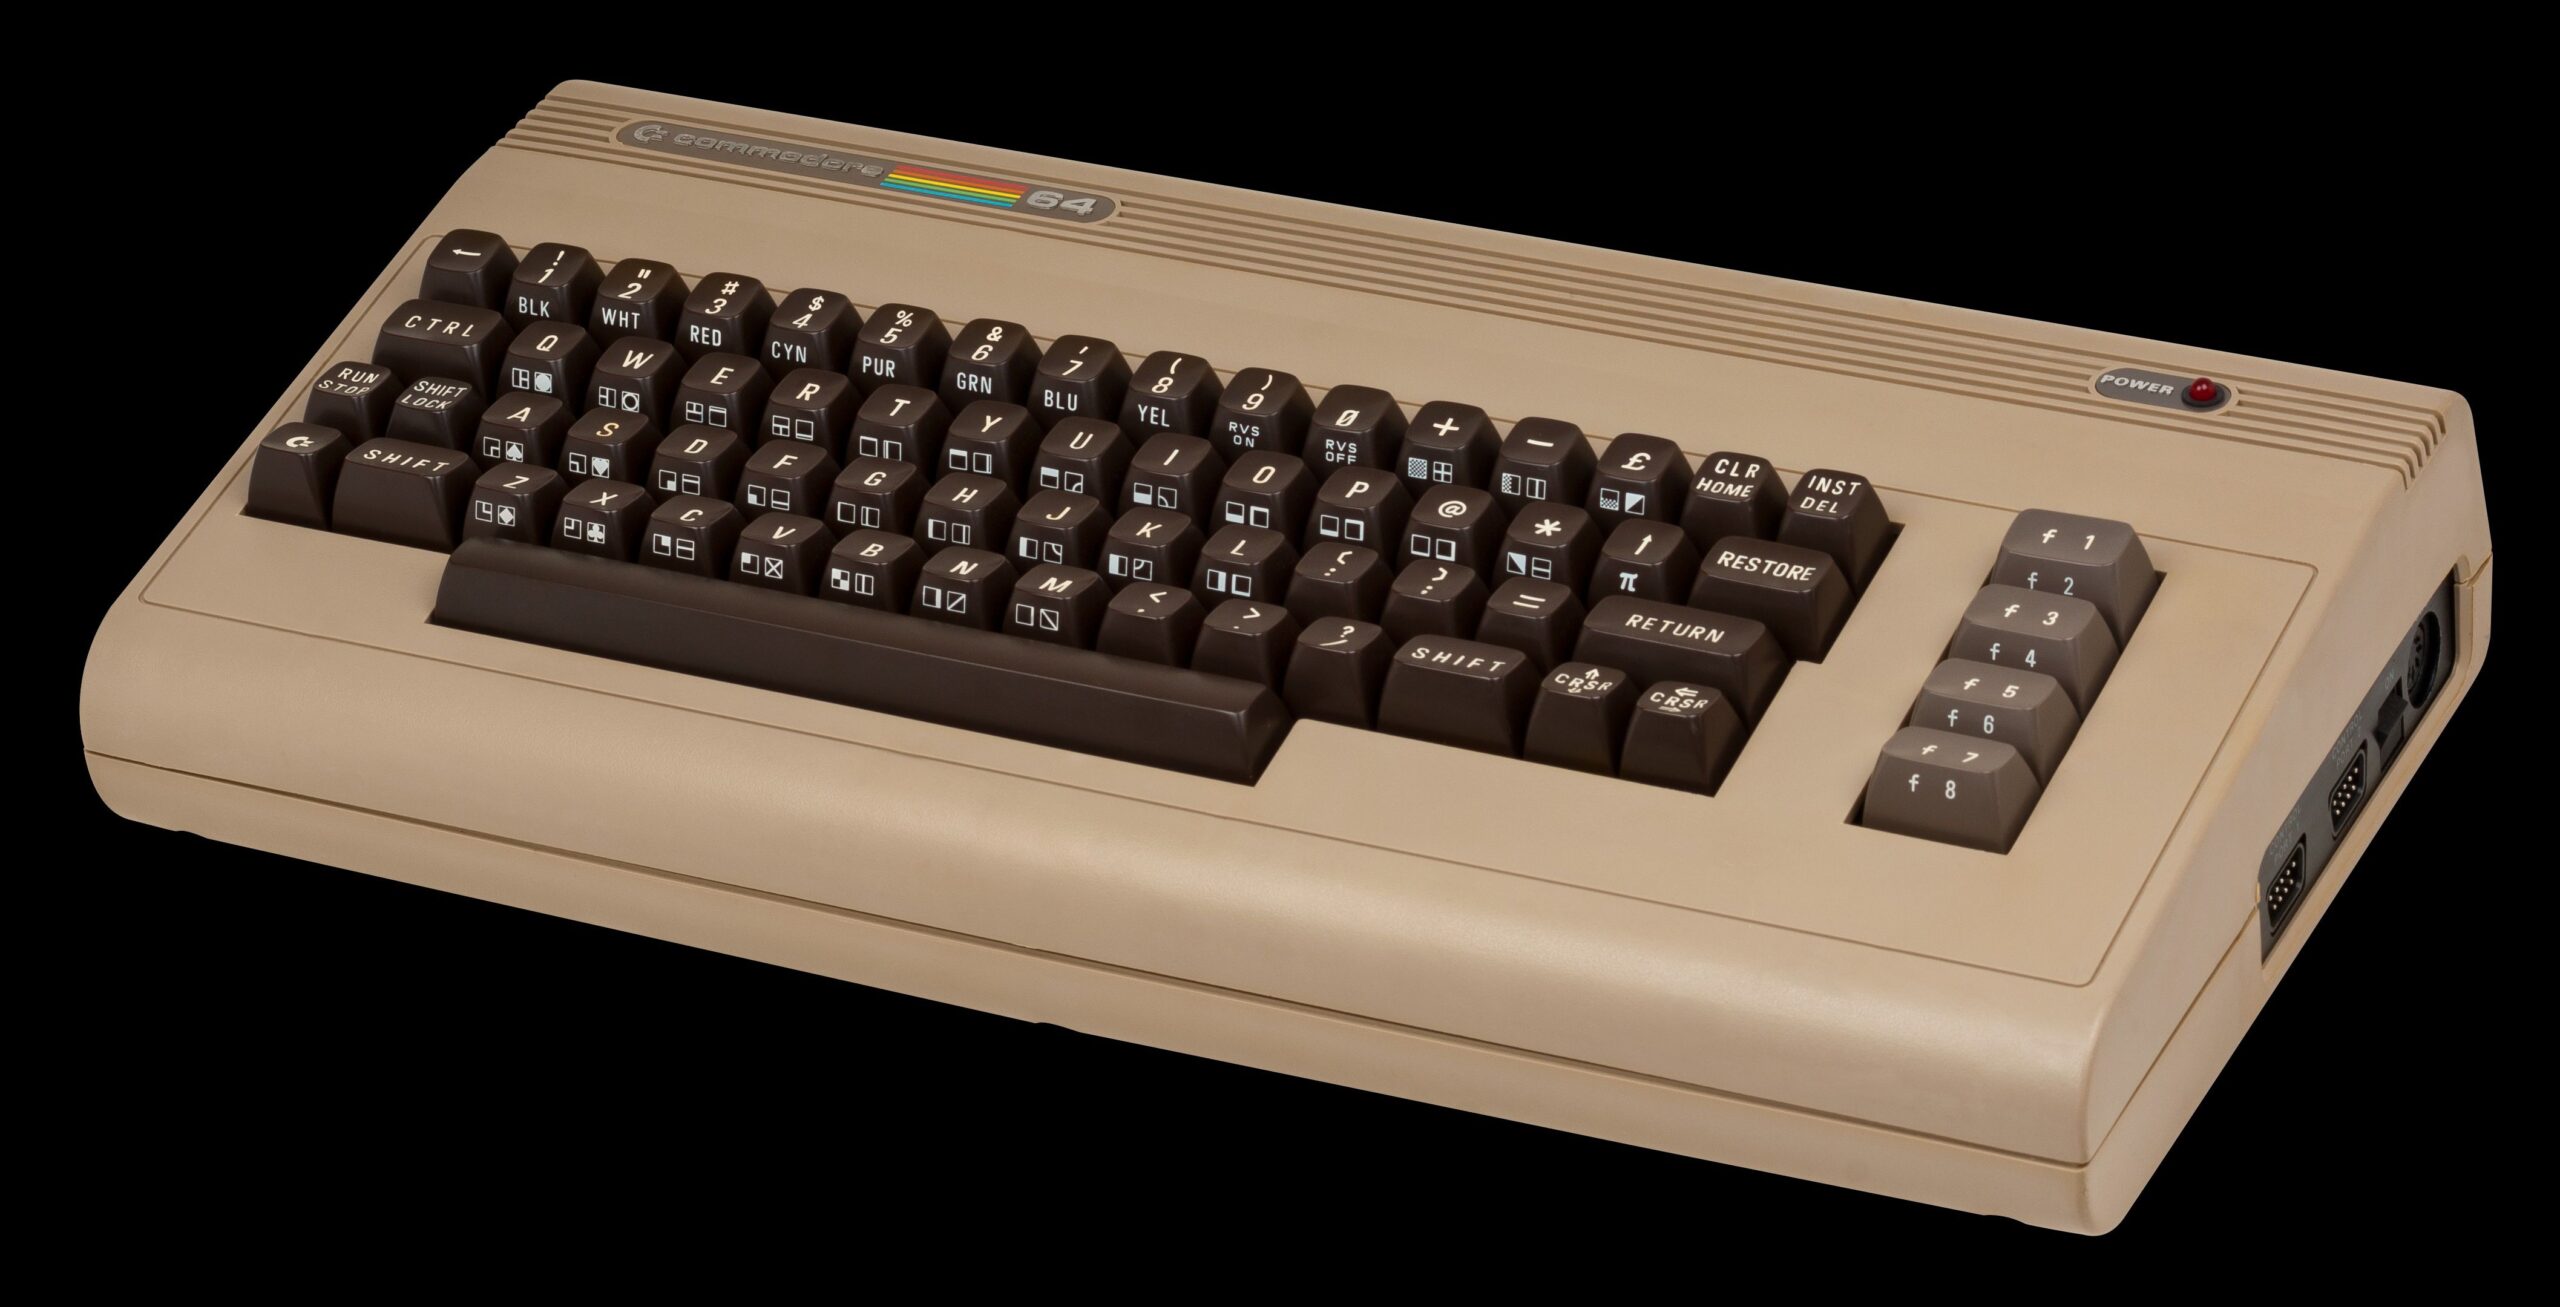 Il Commodore 64 diventa uno smarpthone tutto italiano!